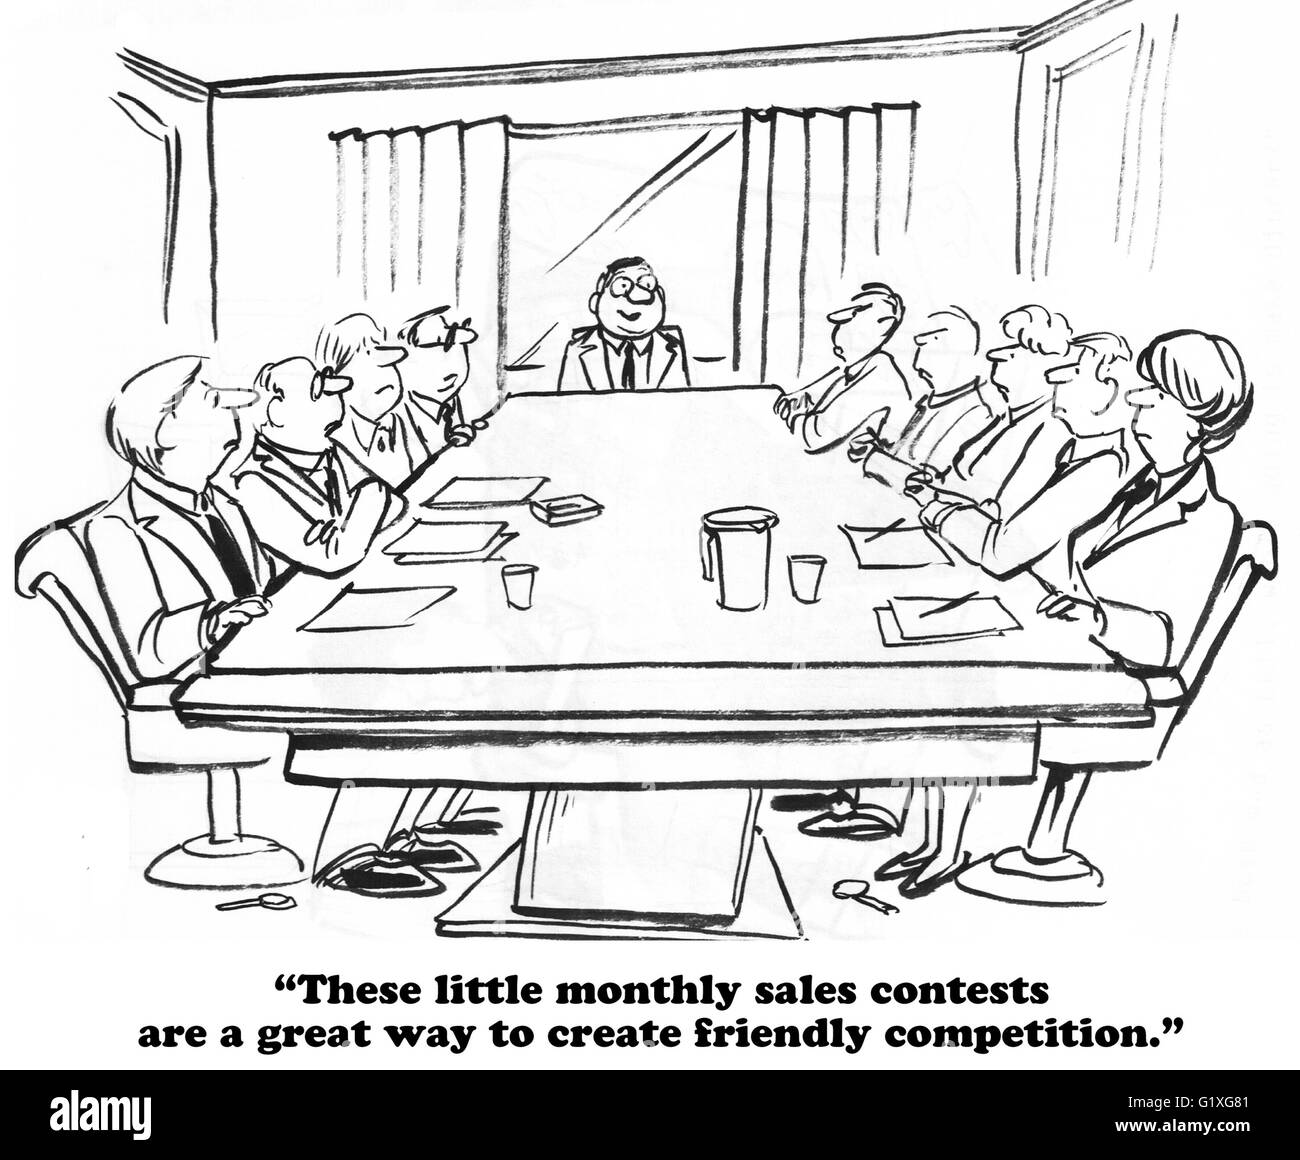 Geschäftliche Cartoon über die monatlichen Umsatz Wettbewerbe. Stockfoto